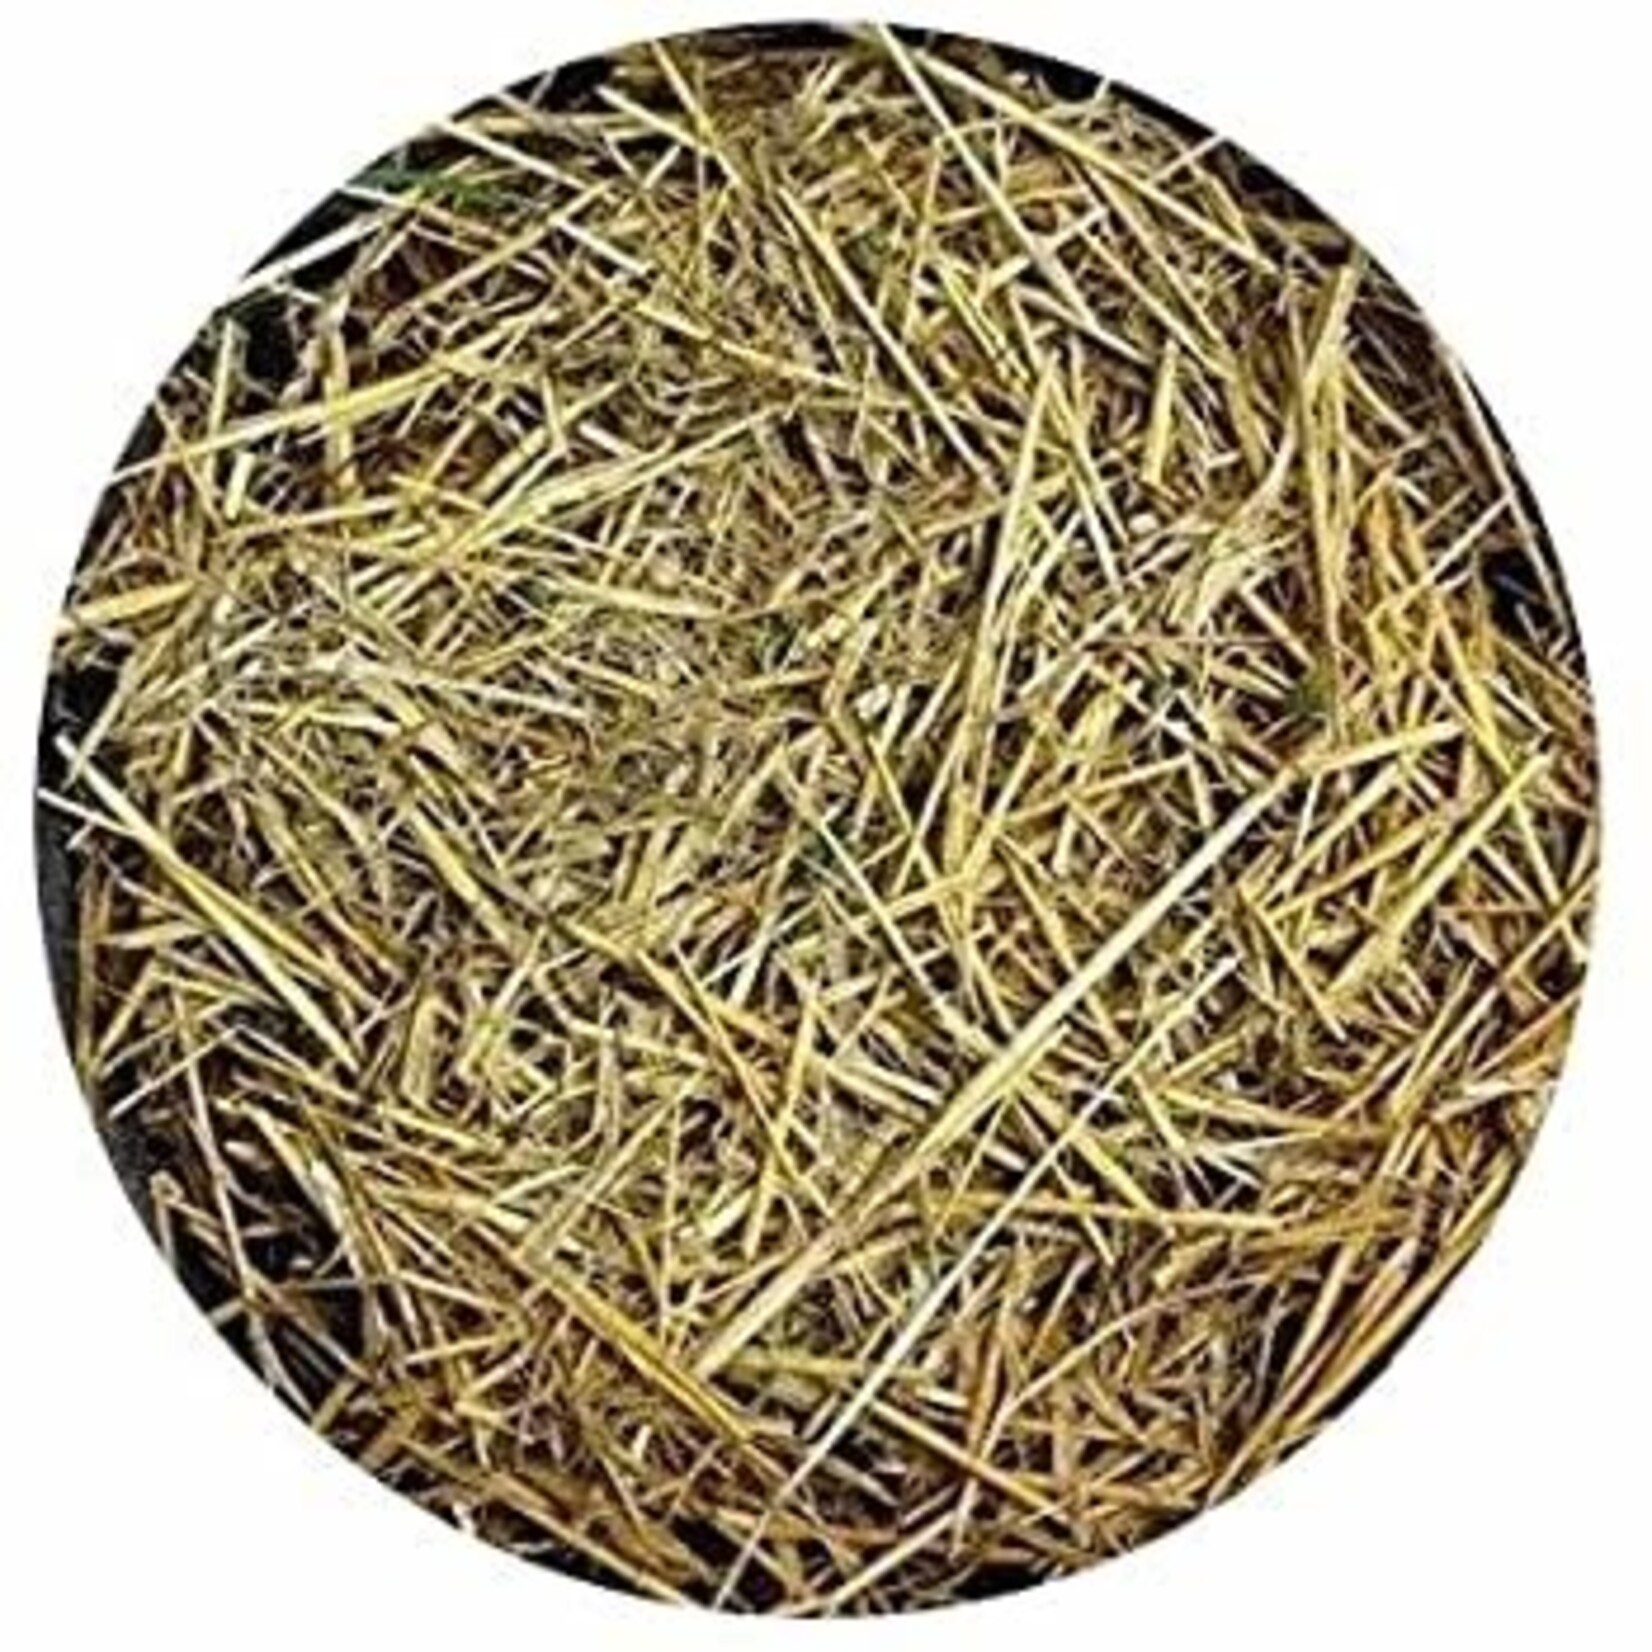 BuildASoil Barley Straw Mulch, 1 cu ft